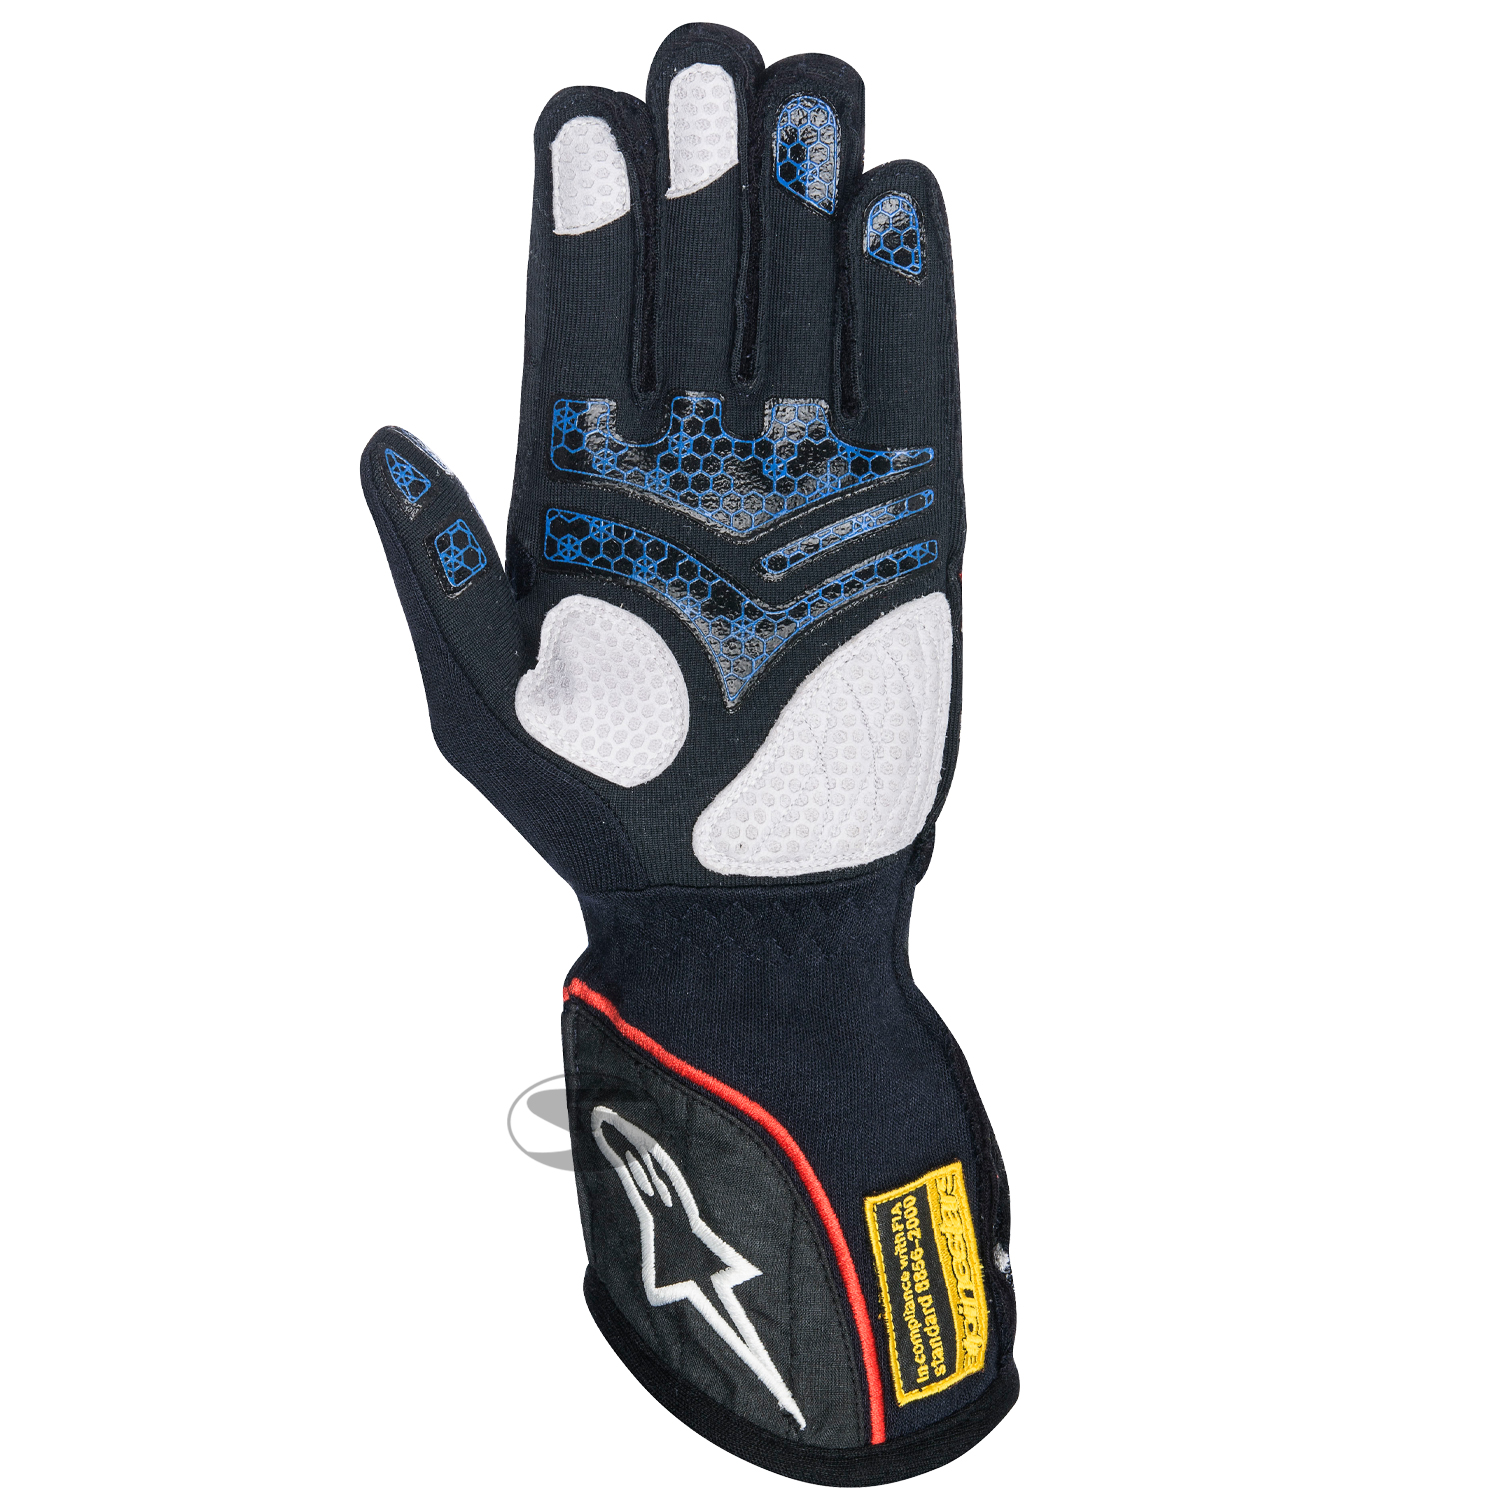 Alpinestars Handschuh Tech 1ZX, blau/schwarz